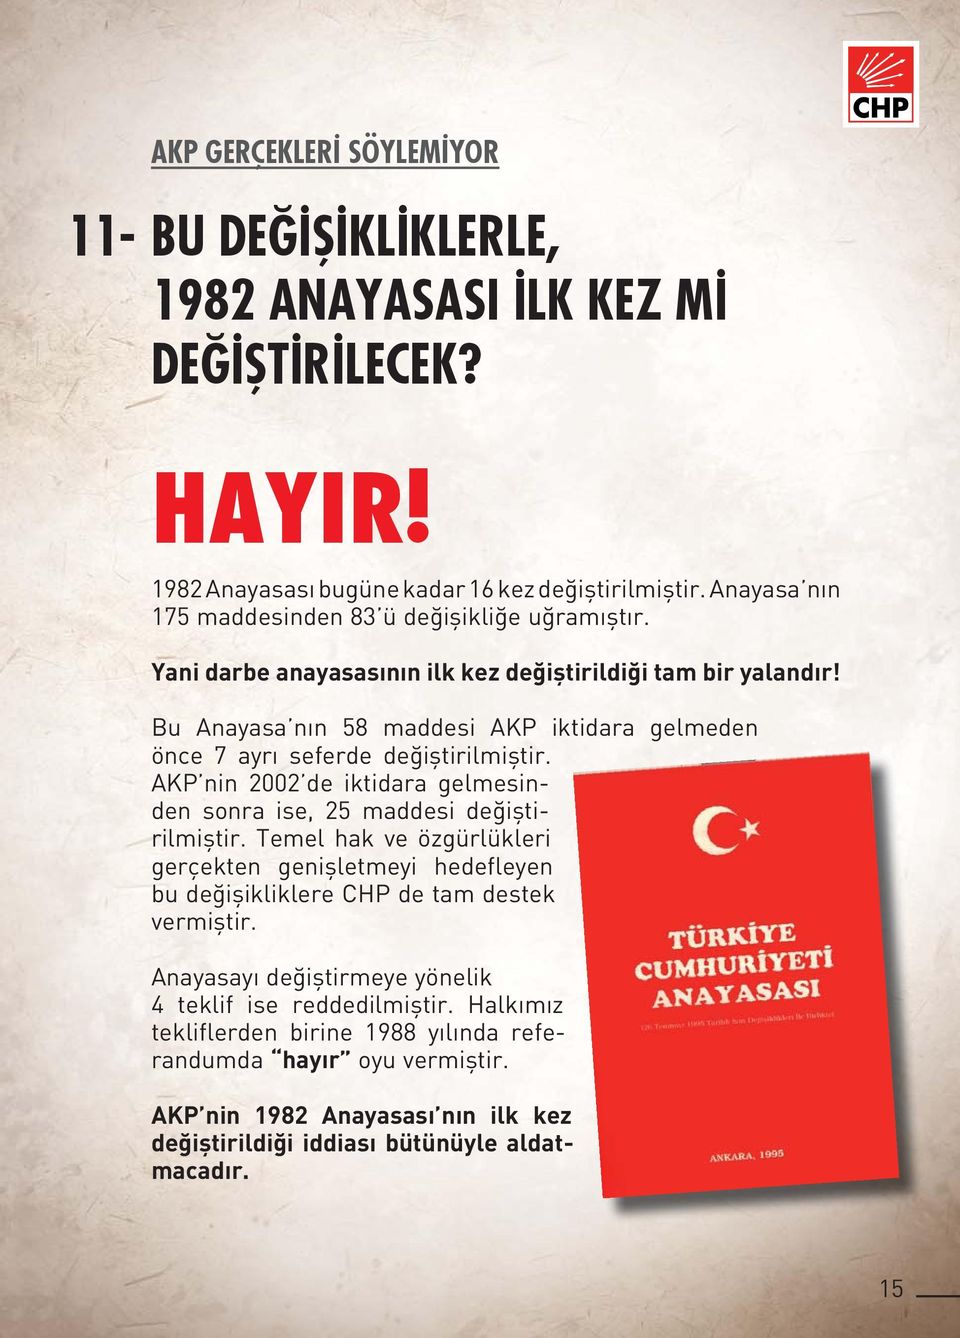 Bu Anayasa nın 58 maddesi AKP iktidara gelmeden önce 7 ayrı seferde değiştirilmiştir. AKP nin 2002 de iktidara gelmesinden sonra ise, 25 maddesi değiştirilmiştir.